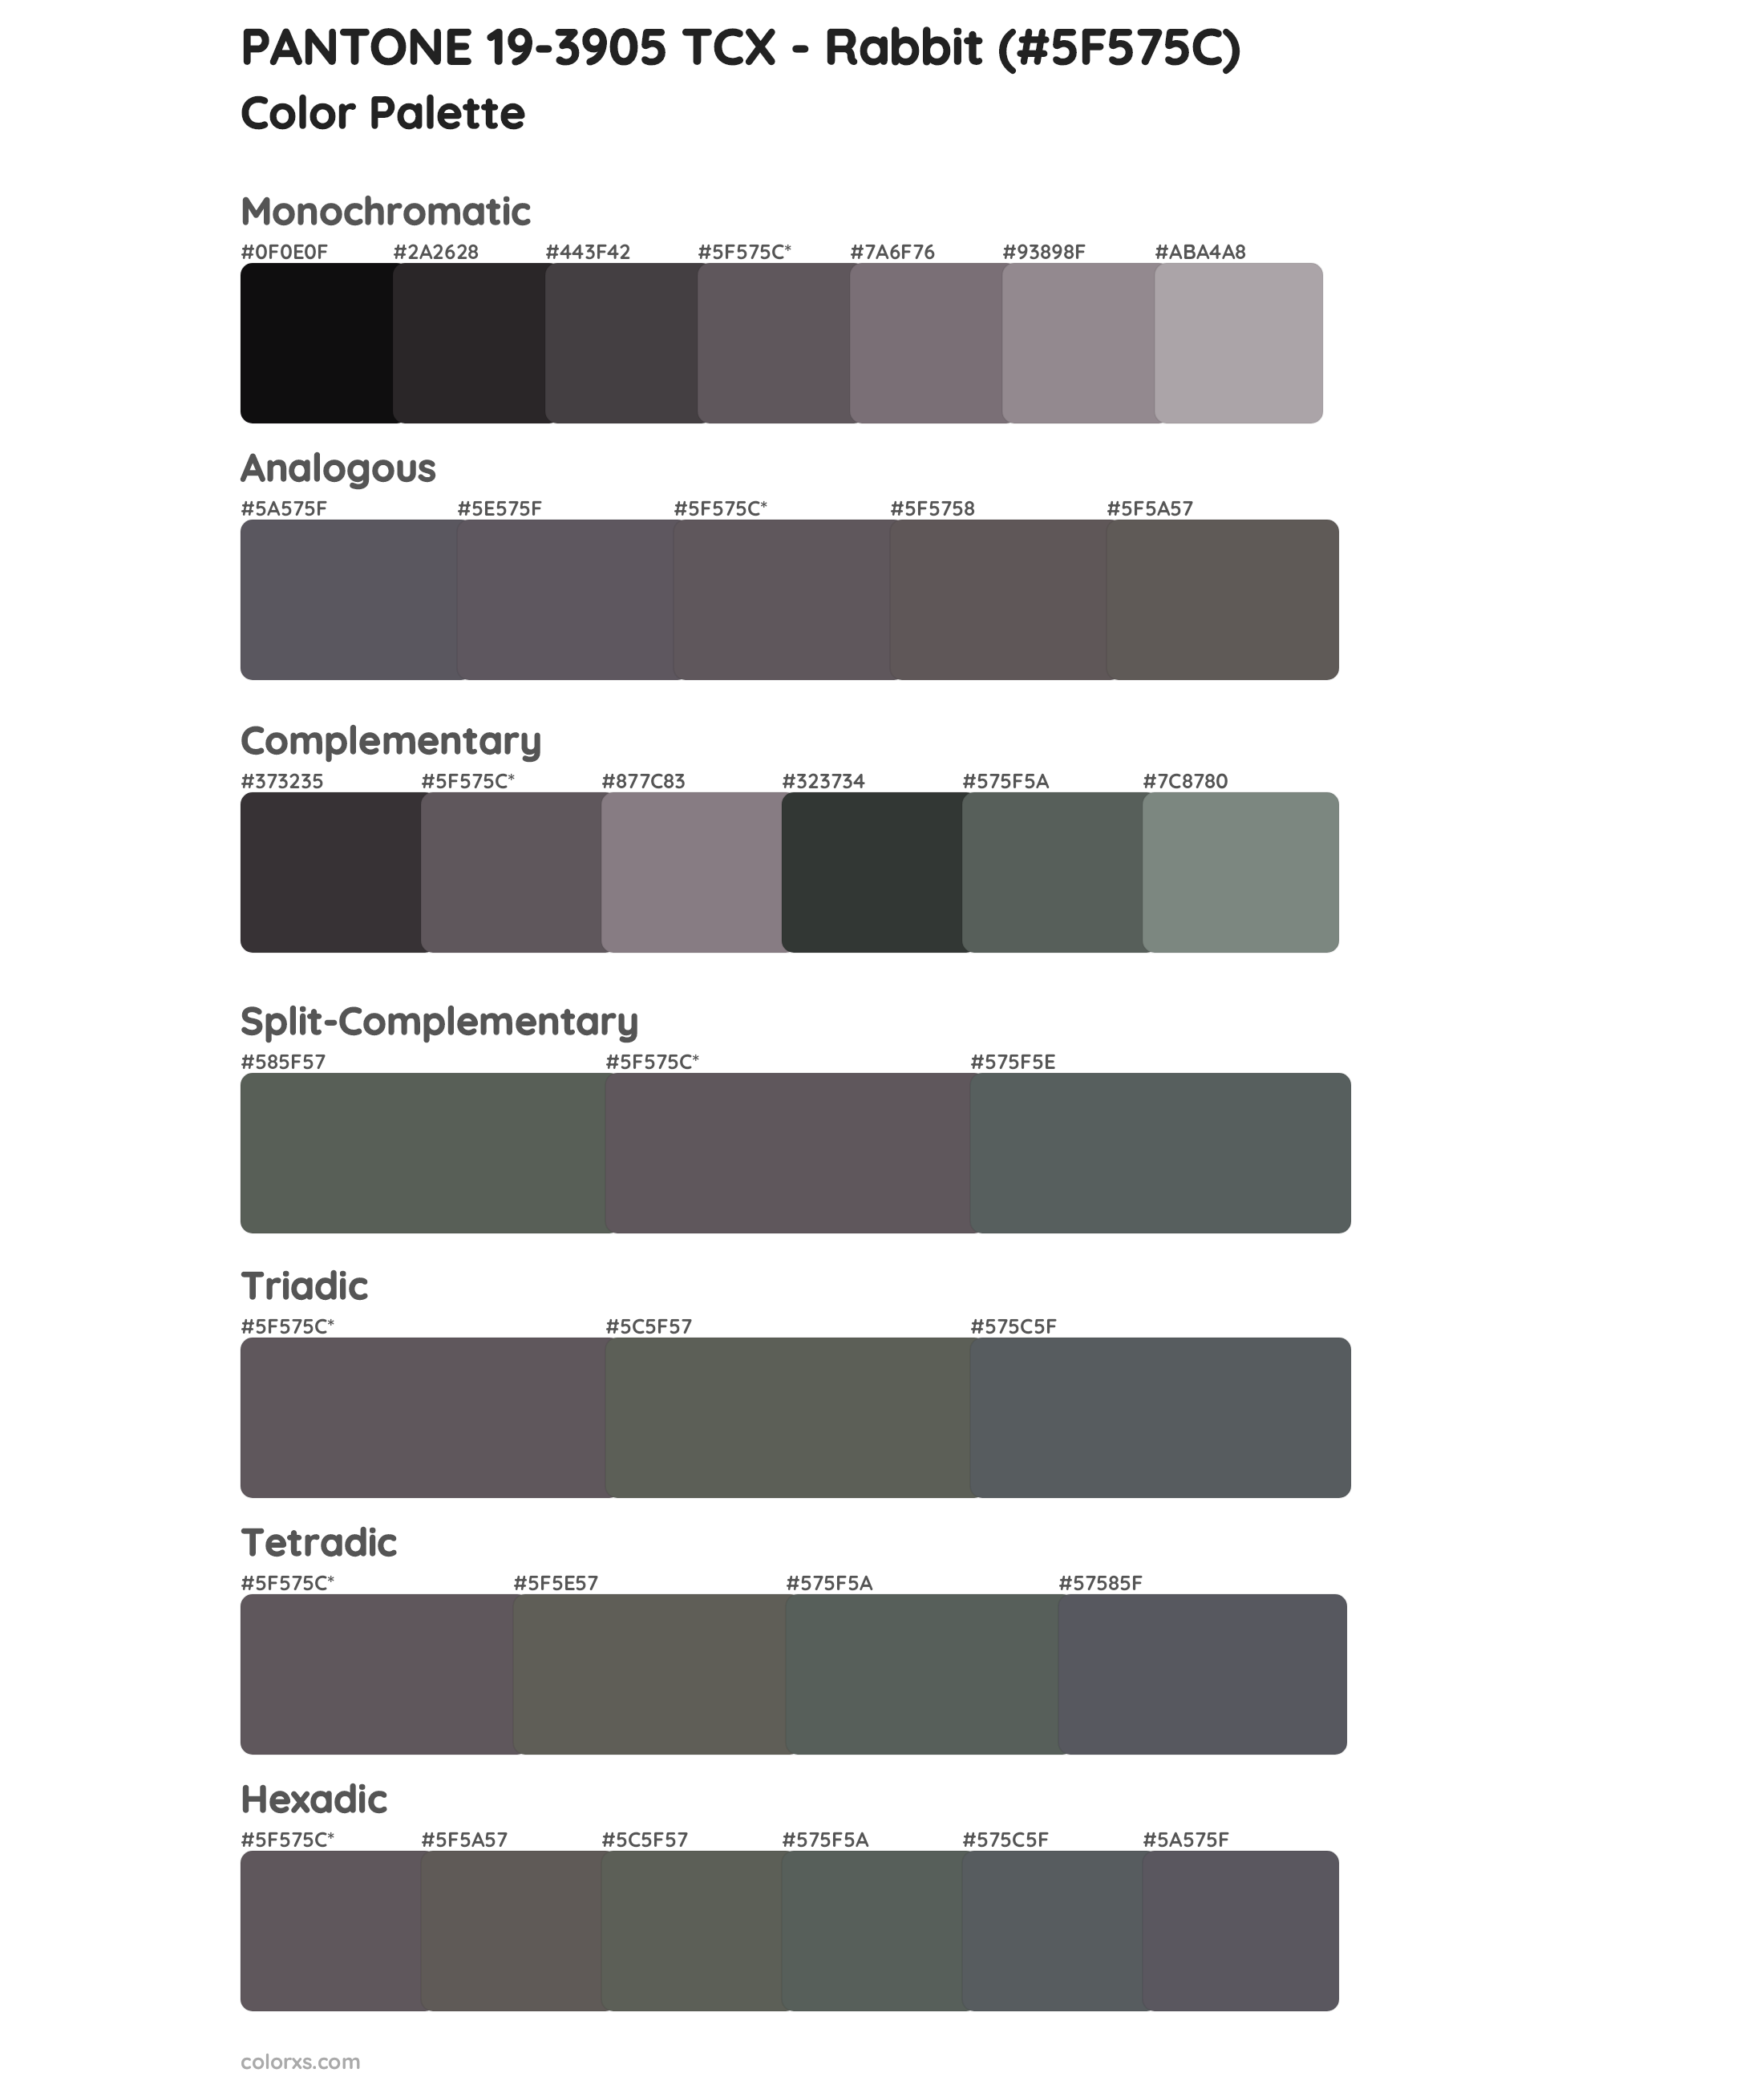 PANTONE 19-3905 TCX - Rabbit Color Scheme Palettes